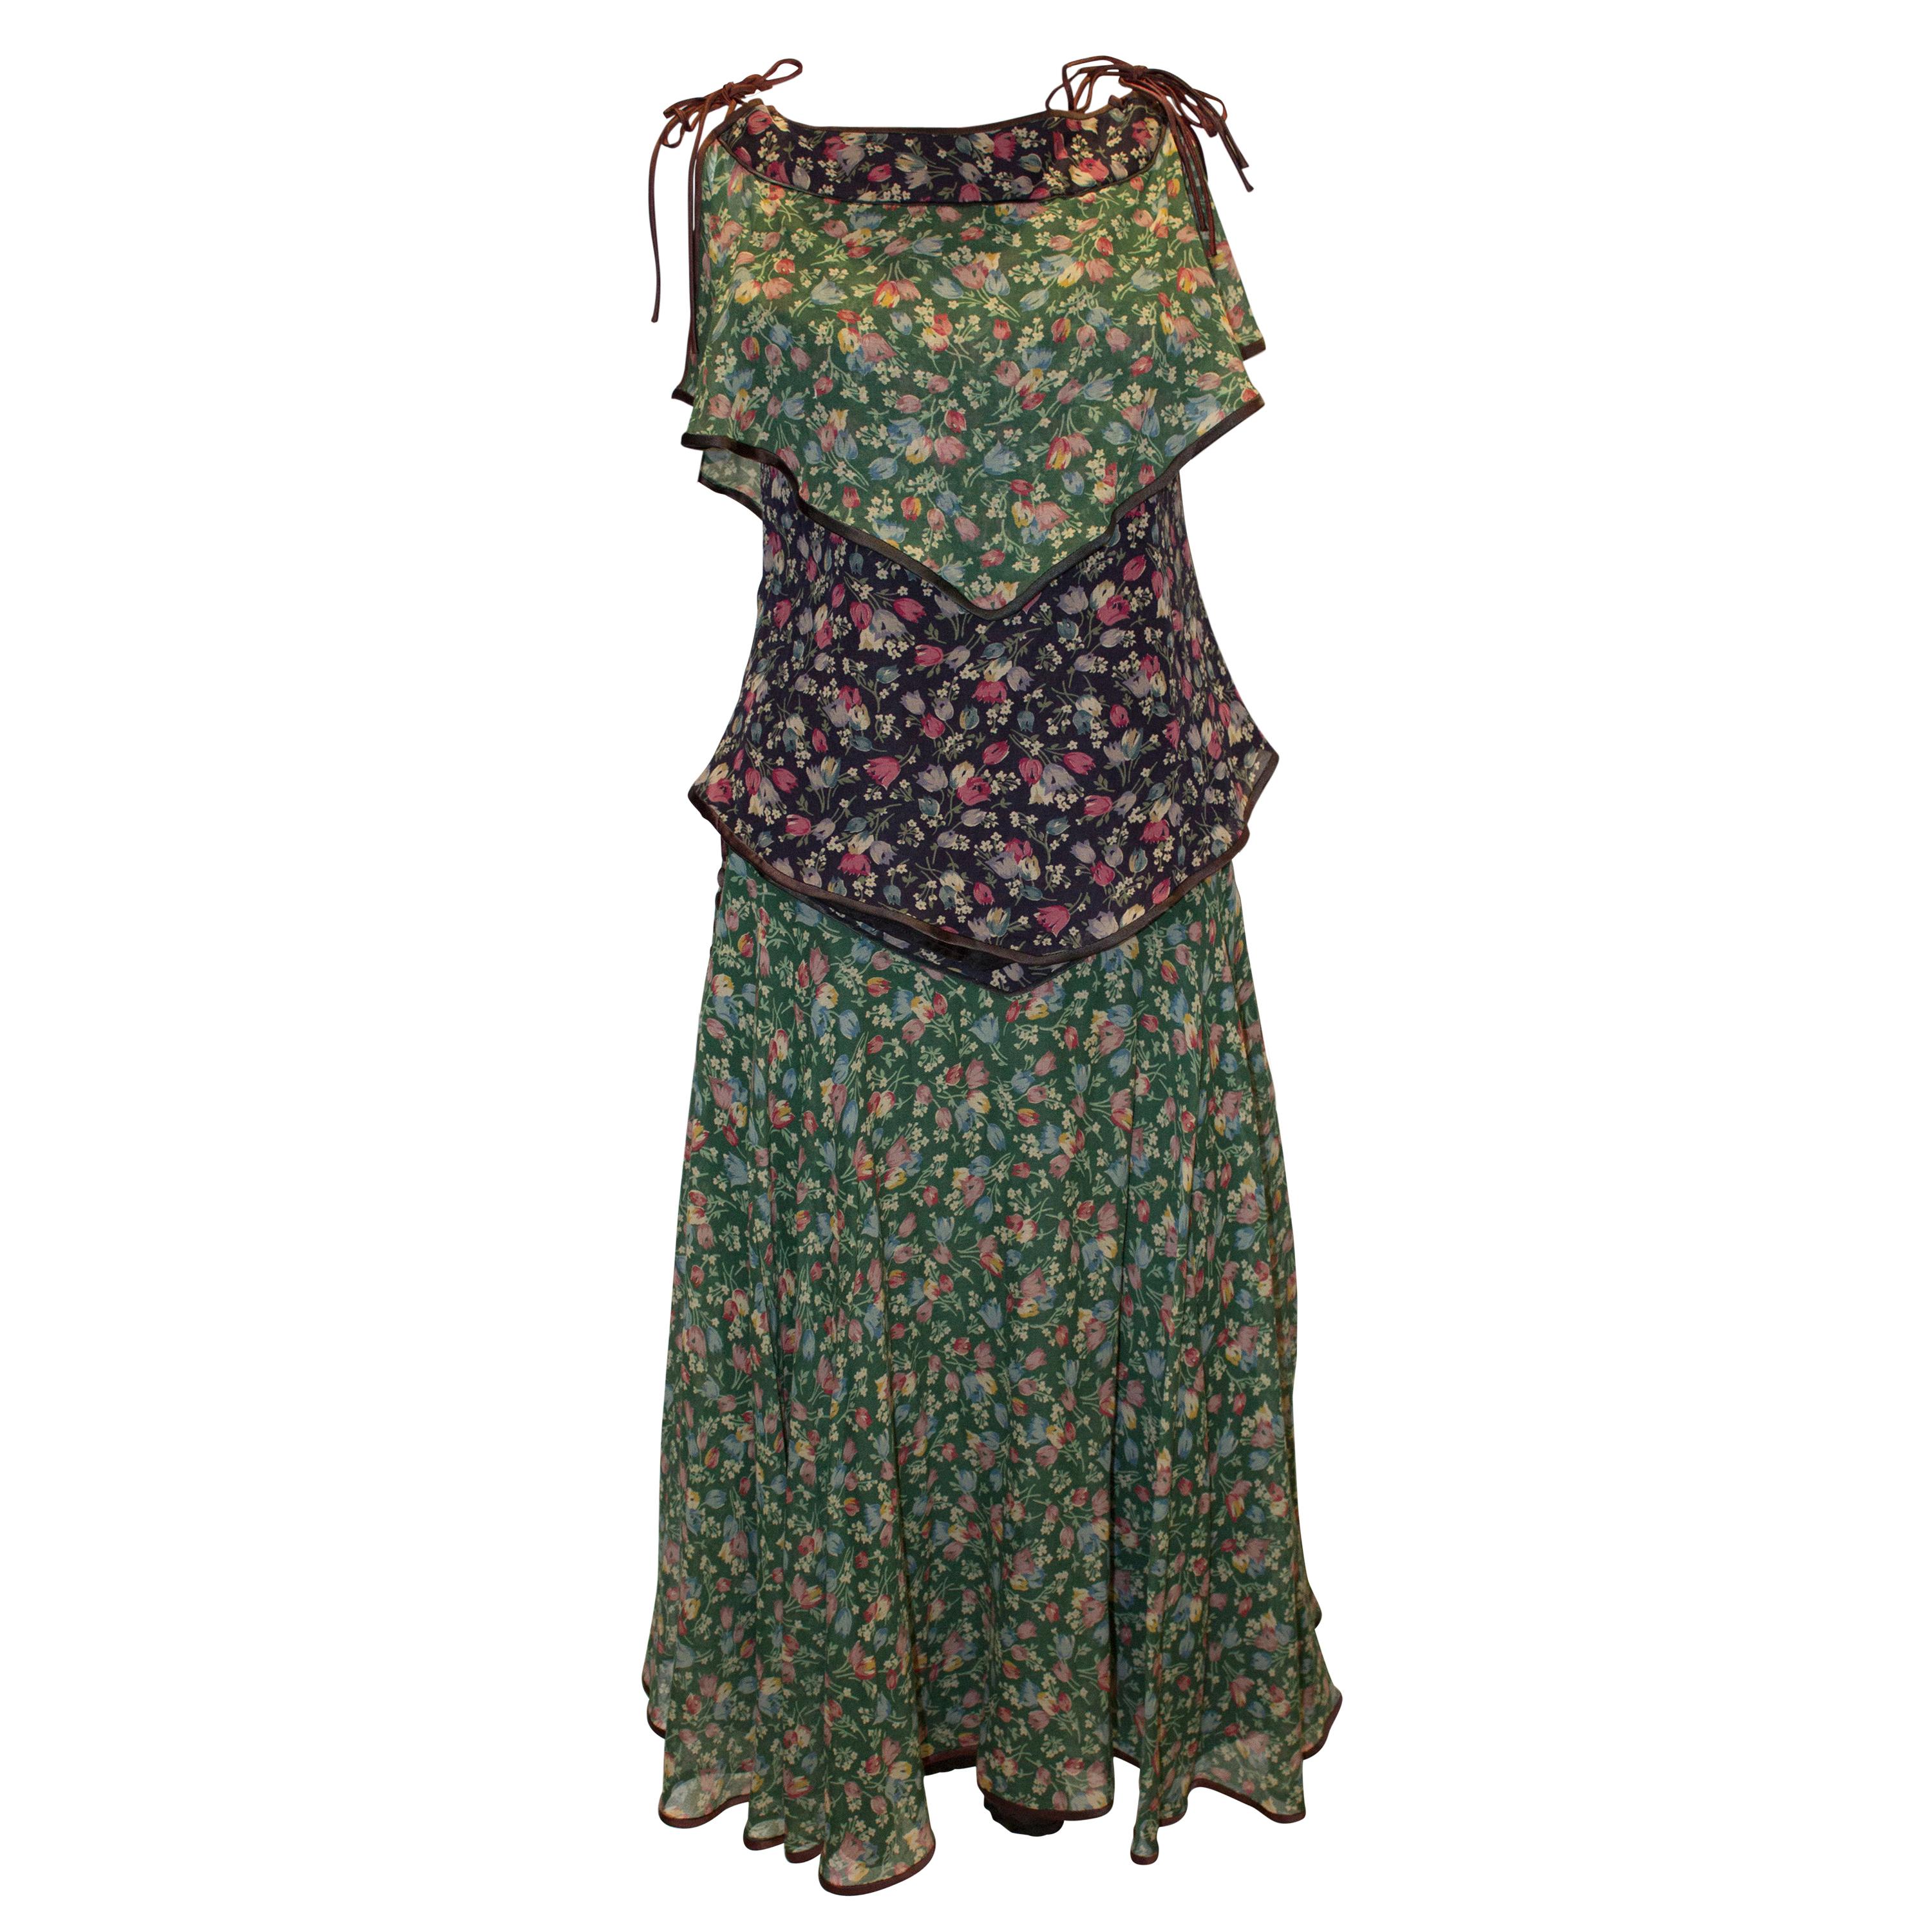 Vintage Anna Belinda Floral Skirt and Top